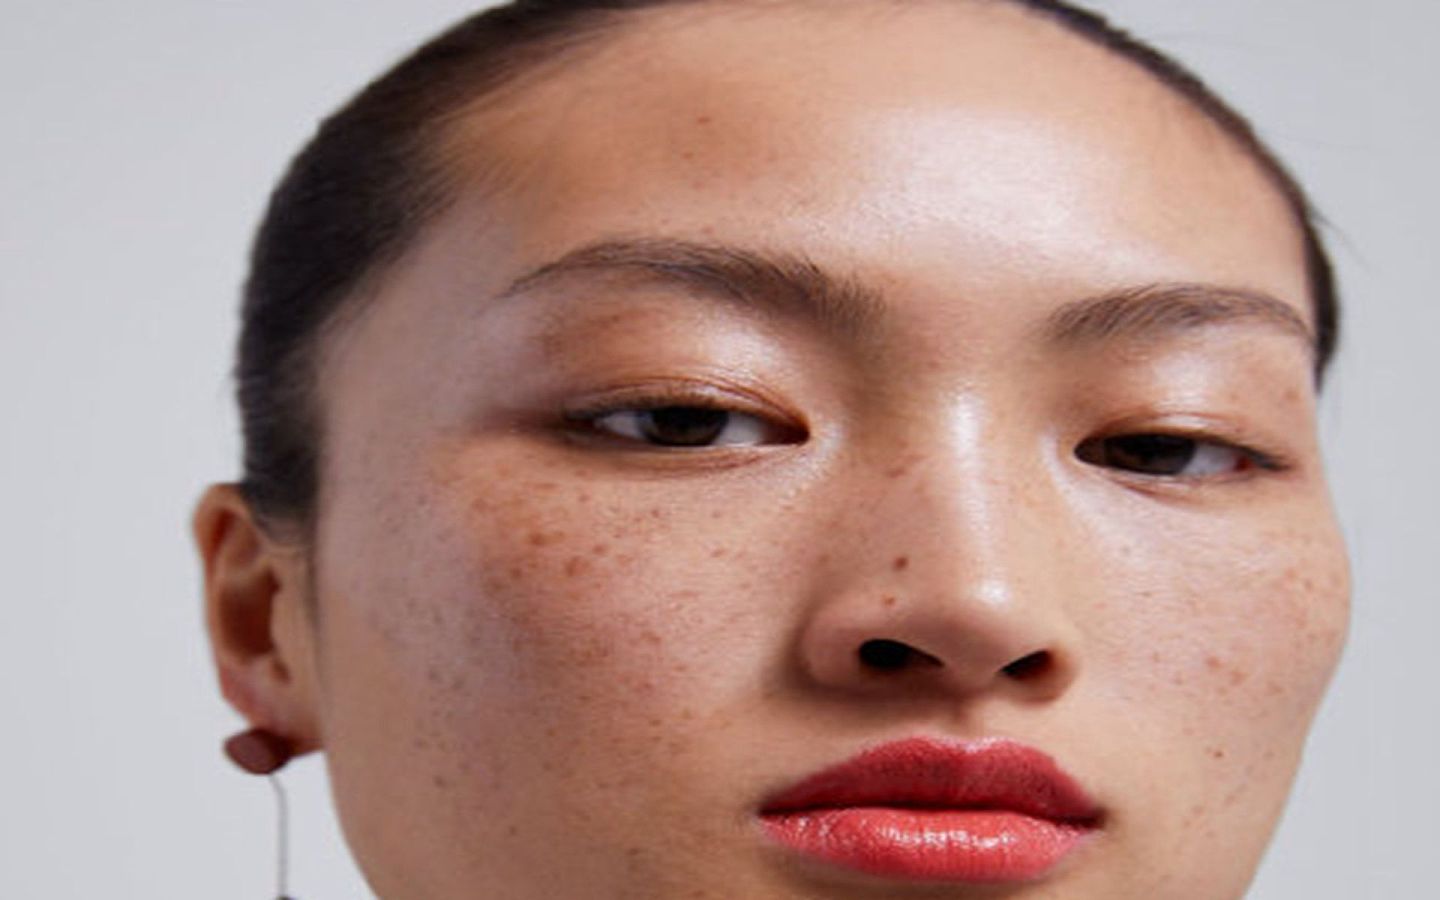 西班牙服装品牌ZARA在社交平台发布旗下最新的产品，照片中的中国模特李静雯满脸雀斑，皮肤粗糙无光泛黑，之后被网友质疑是在故意丑化亚洲女性，涉嫌辱华。（@相信设计）